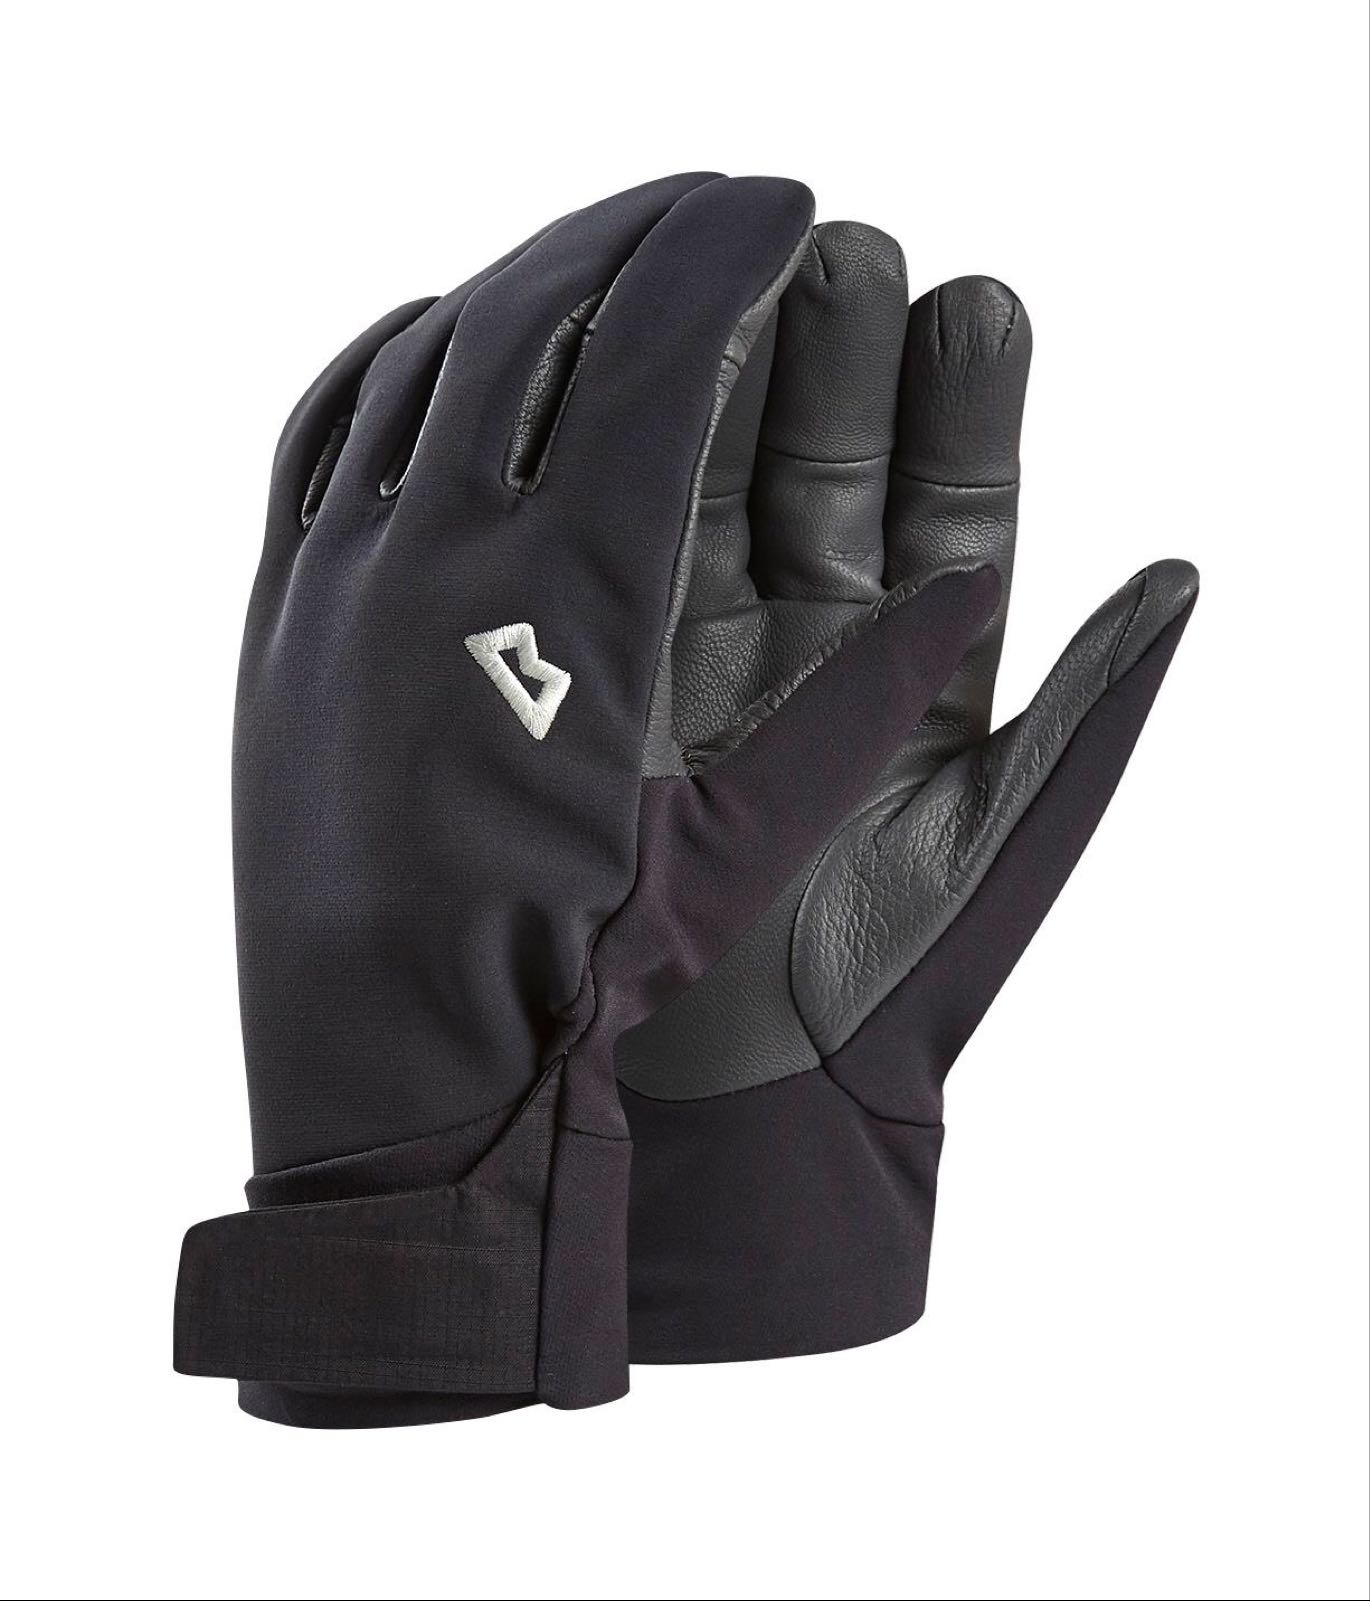 G2 alpine glove